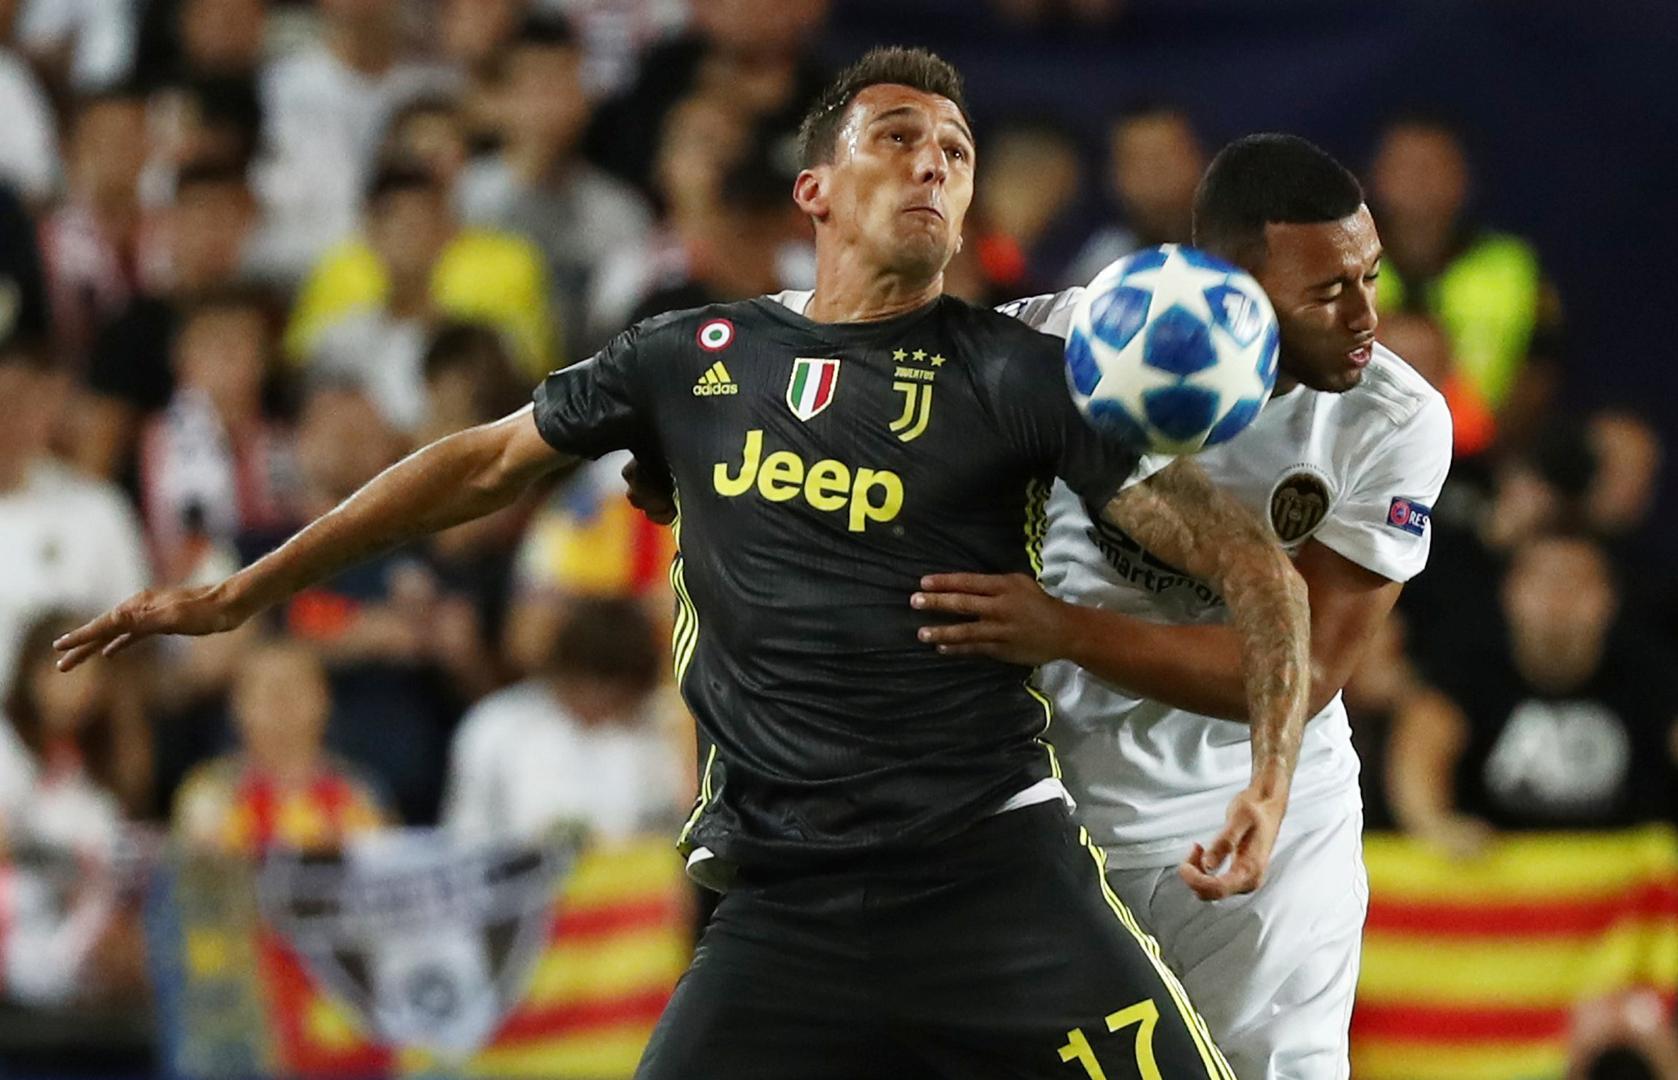 Mario Mandžukić uskoro bi trebao potpisati novi ugovor s Juventusom koji mu garantira pet milijuna eura godišnje.

